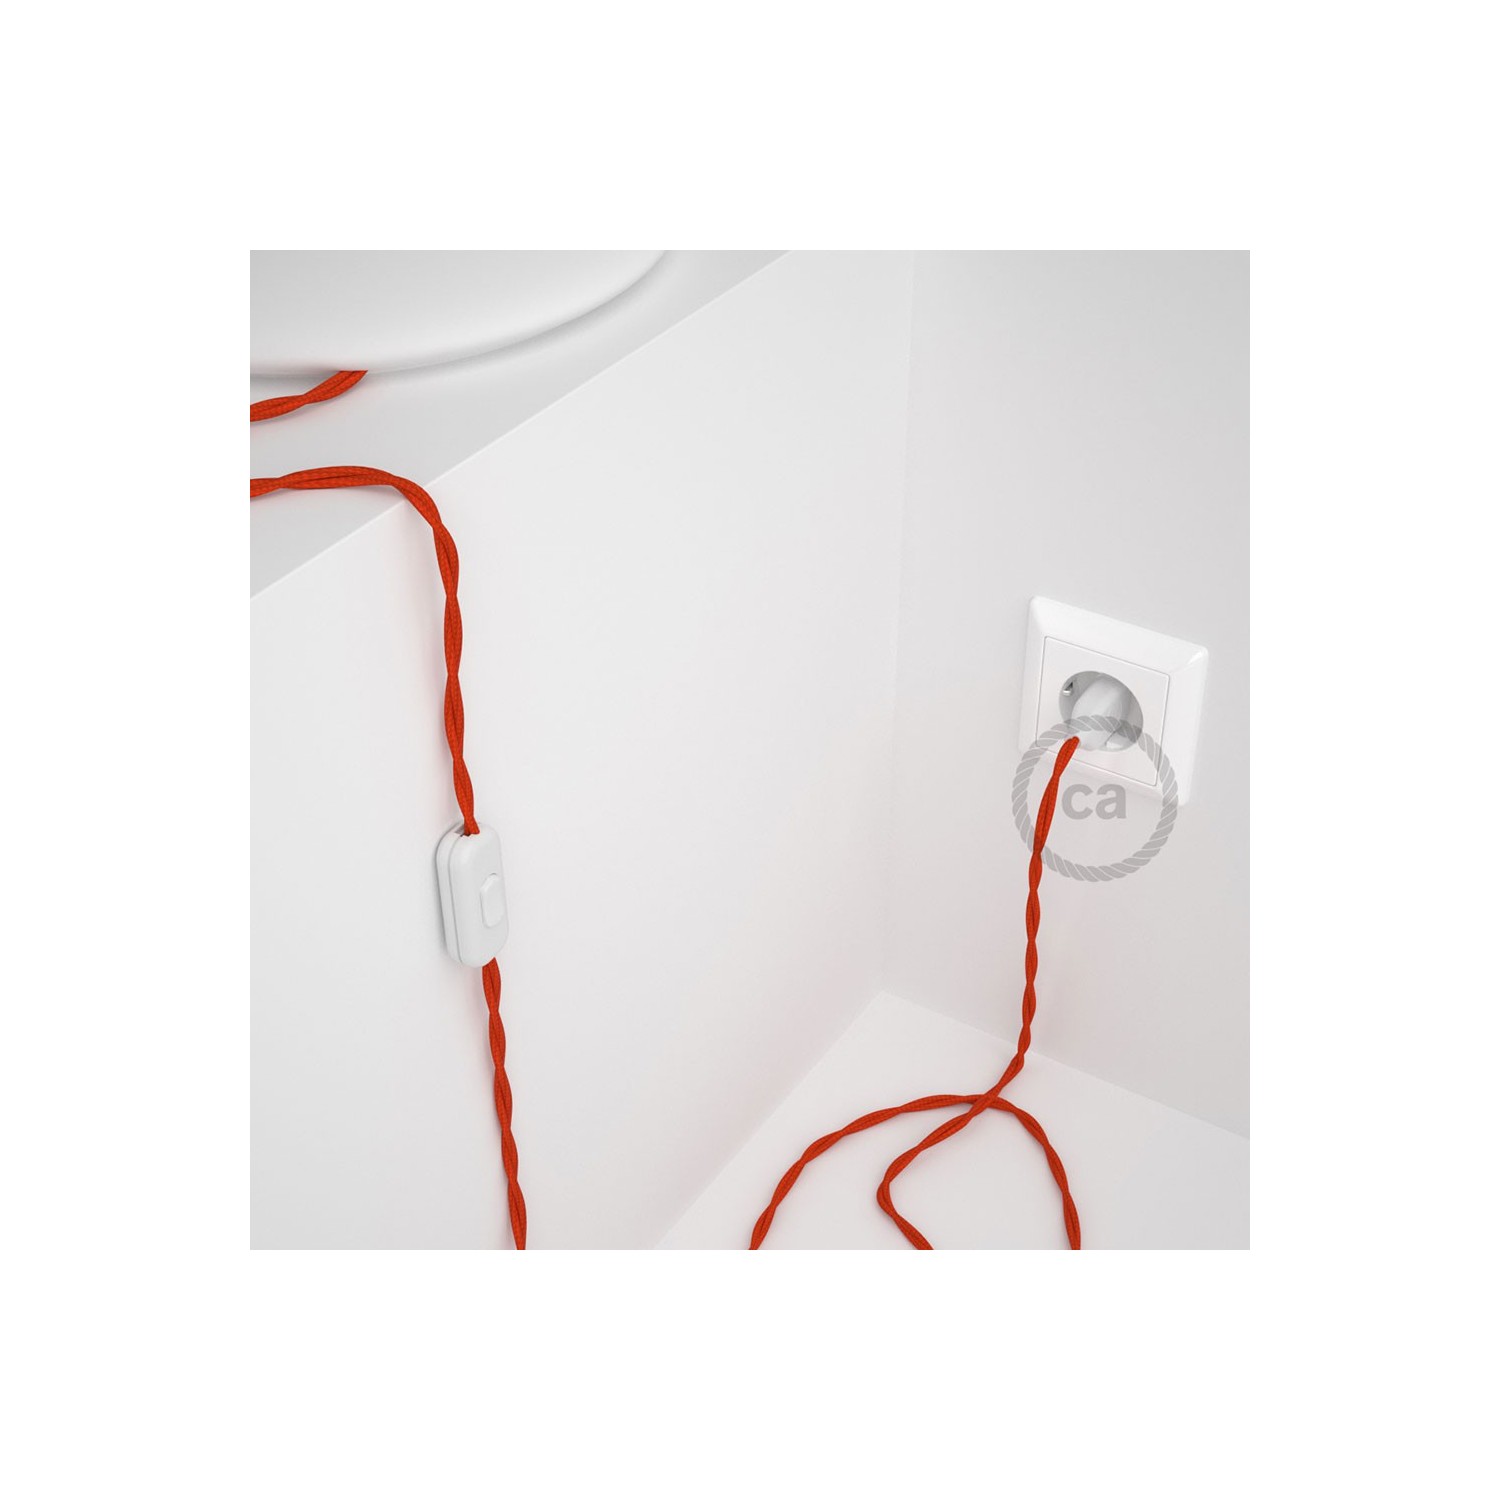 Cablaggio per lampada, cavo TM15 Effetto Seta Arancione 1,80 m. Scegli il colore dell'interruttore e della spina.